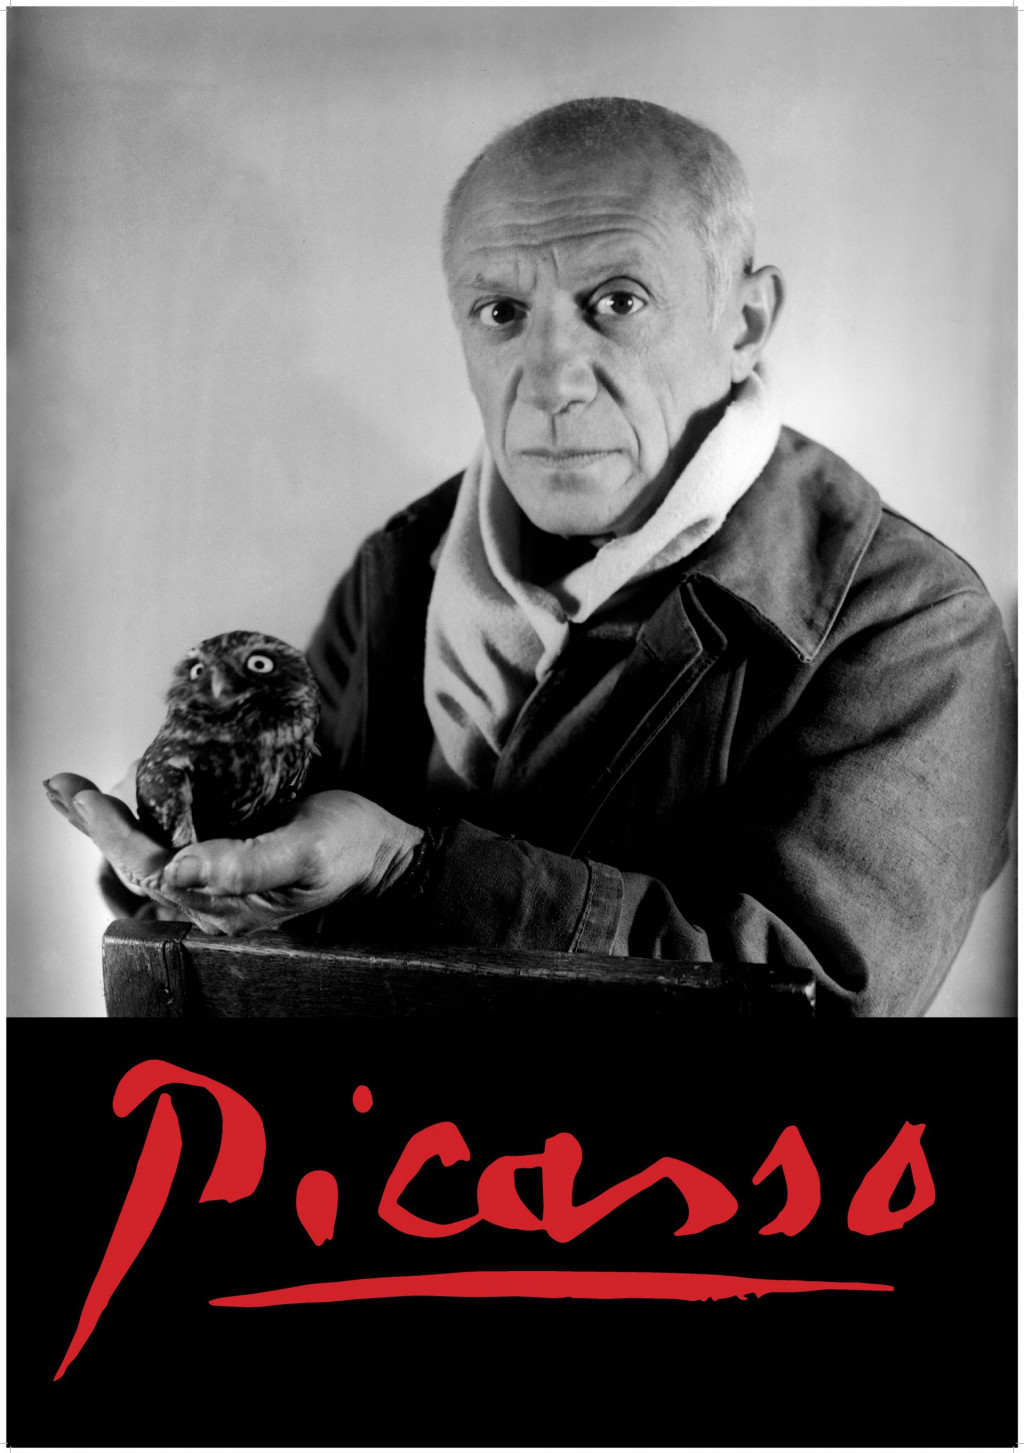 &lt;p&gt;Pablo Picasso&lt;/p&gt;